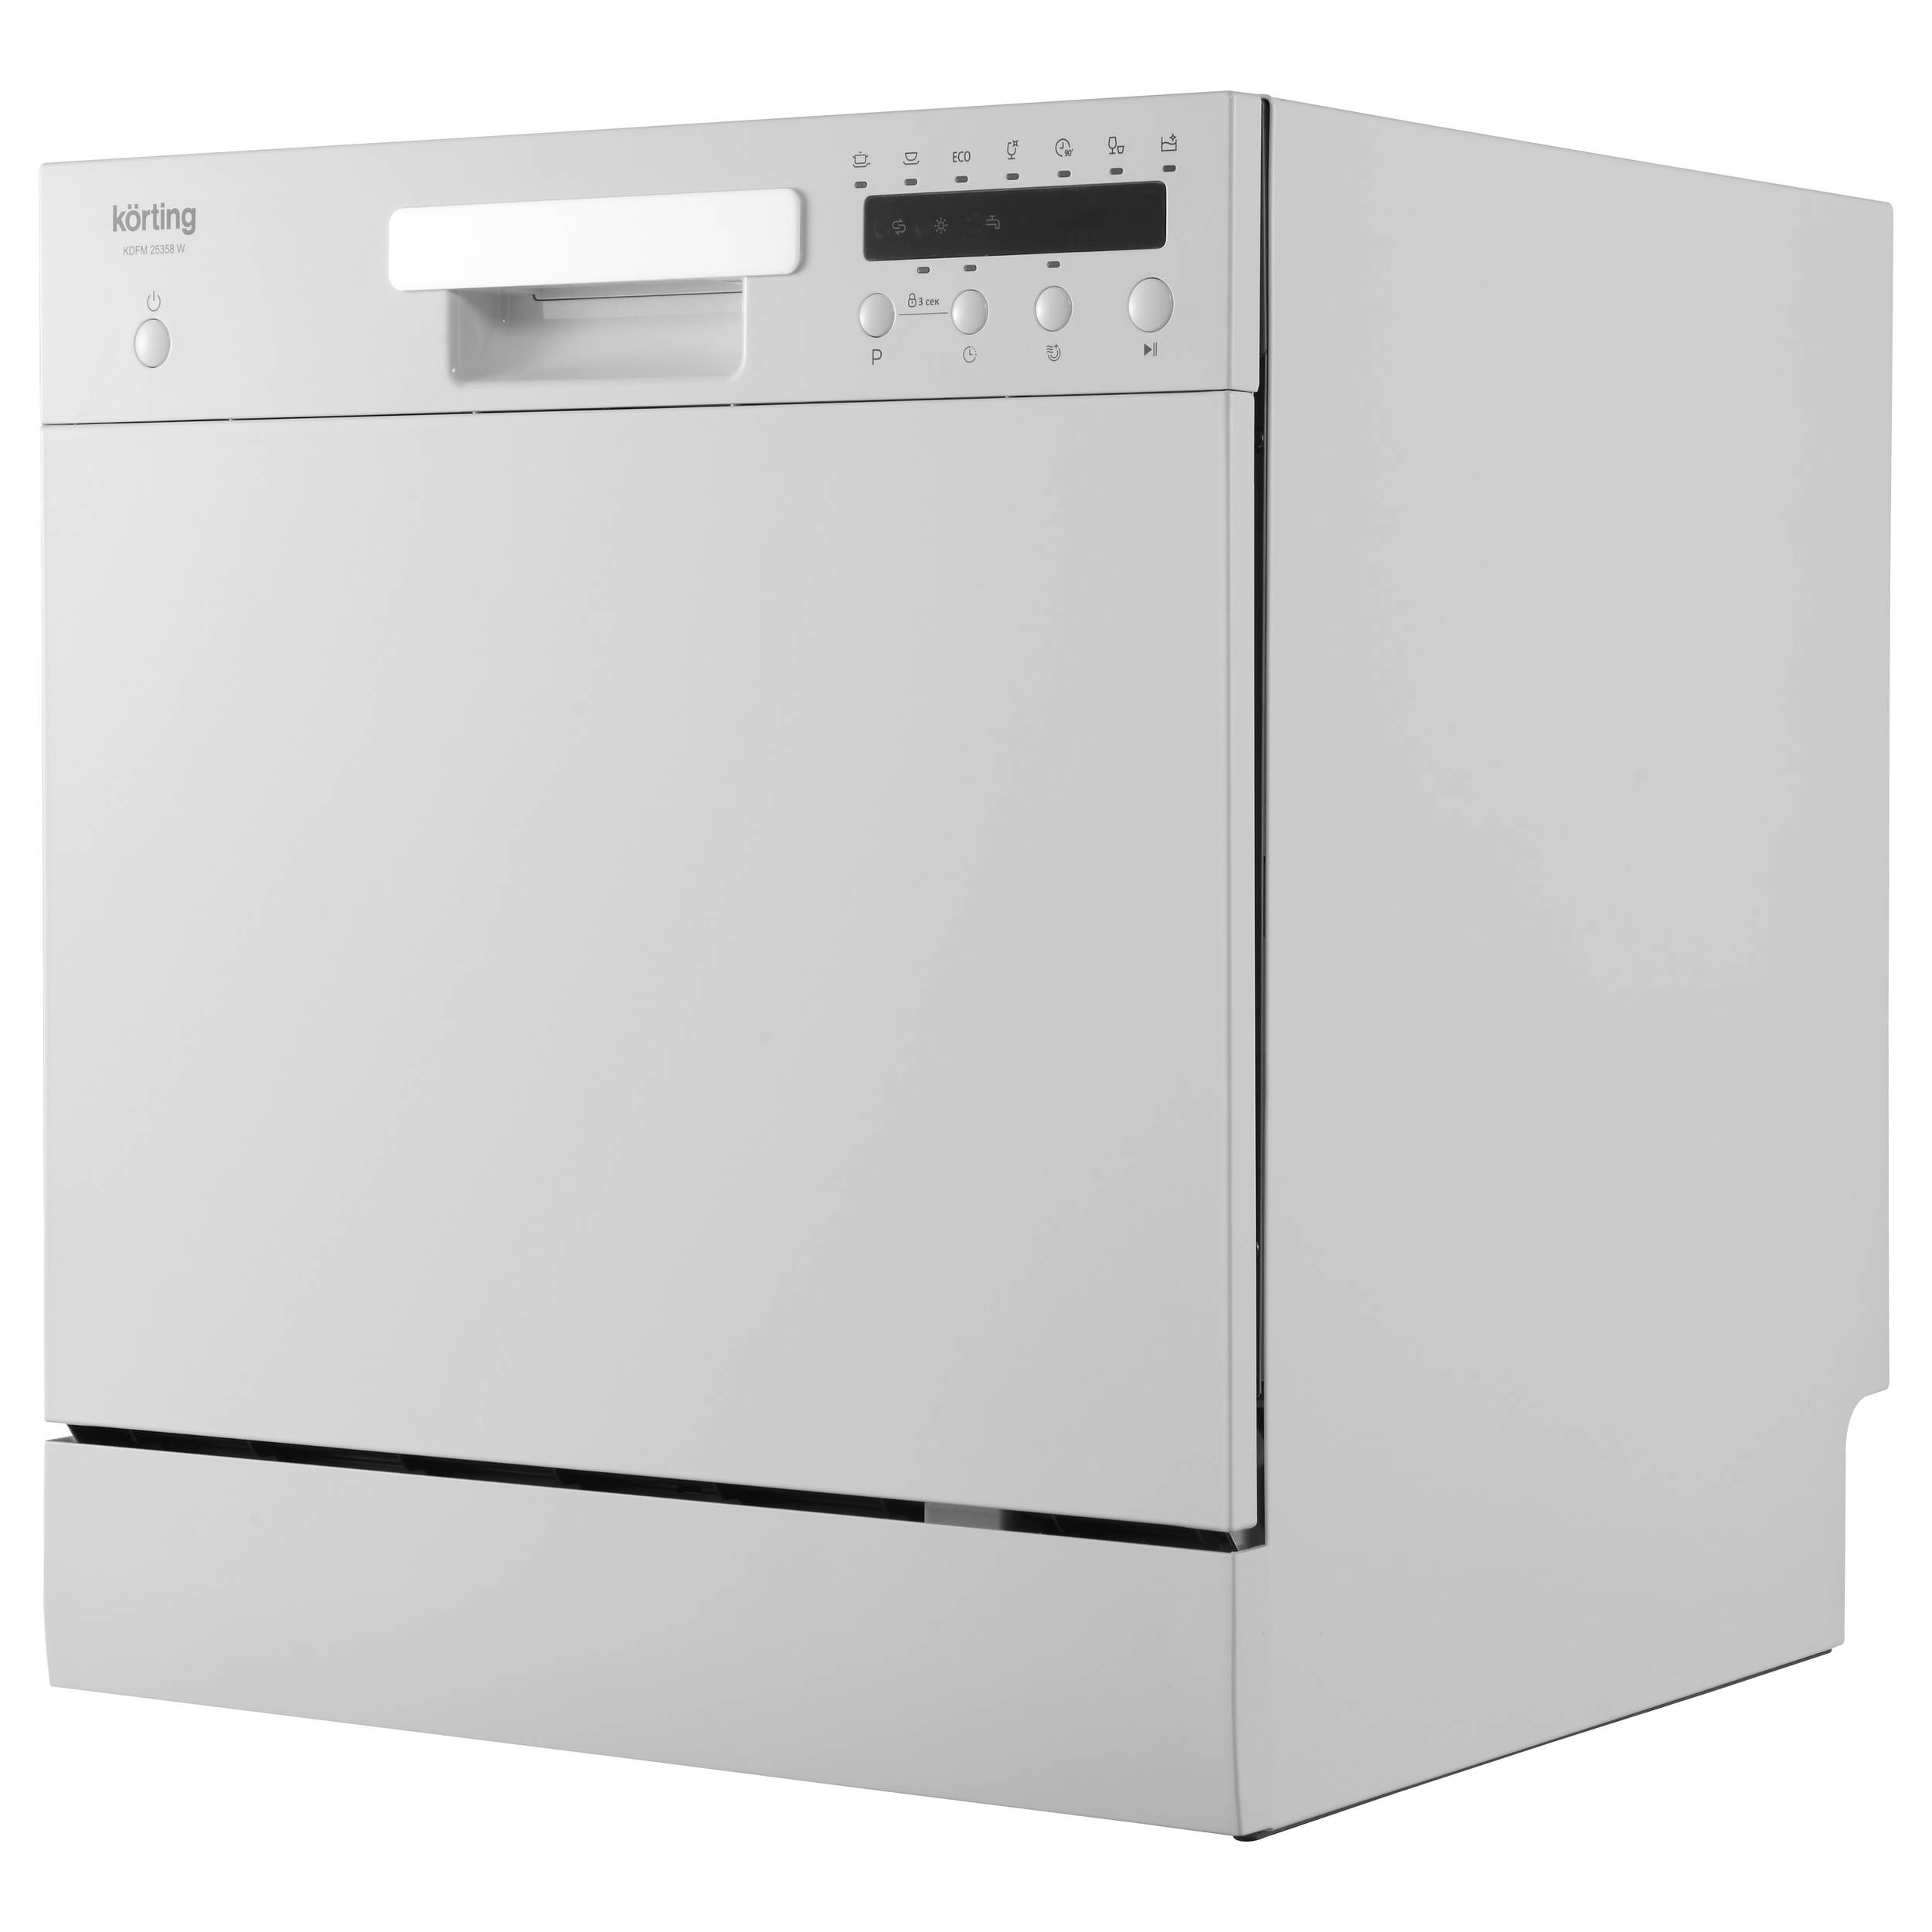 Посудомоечная машина Korting KDFM 25358 W белый посудомоечная машина korting kdfm 25358 w белый